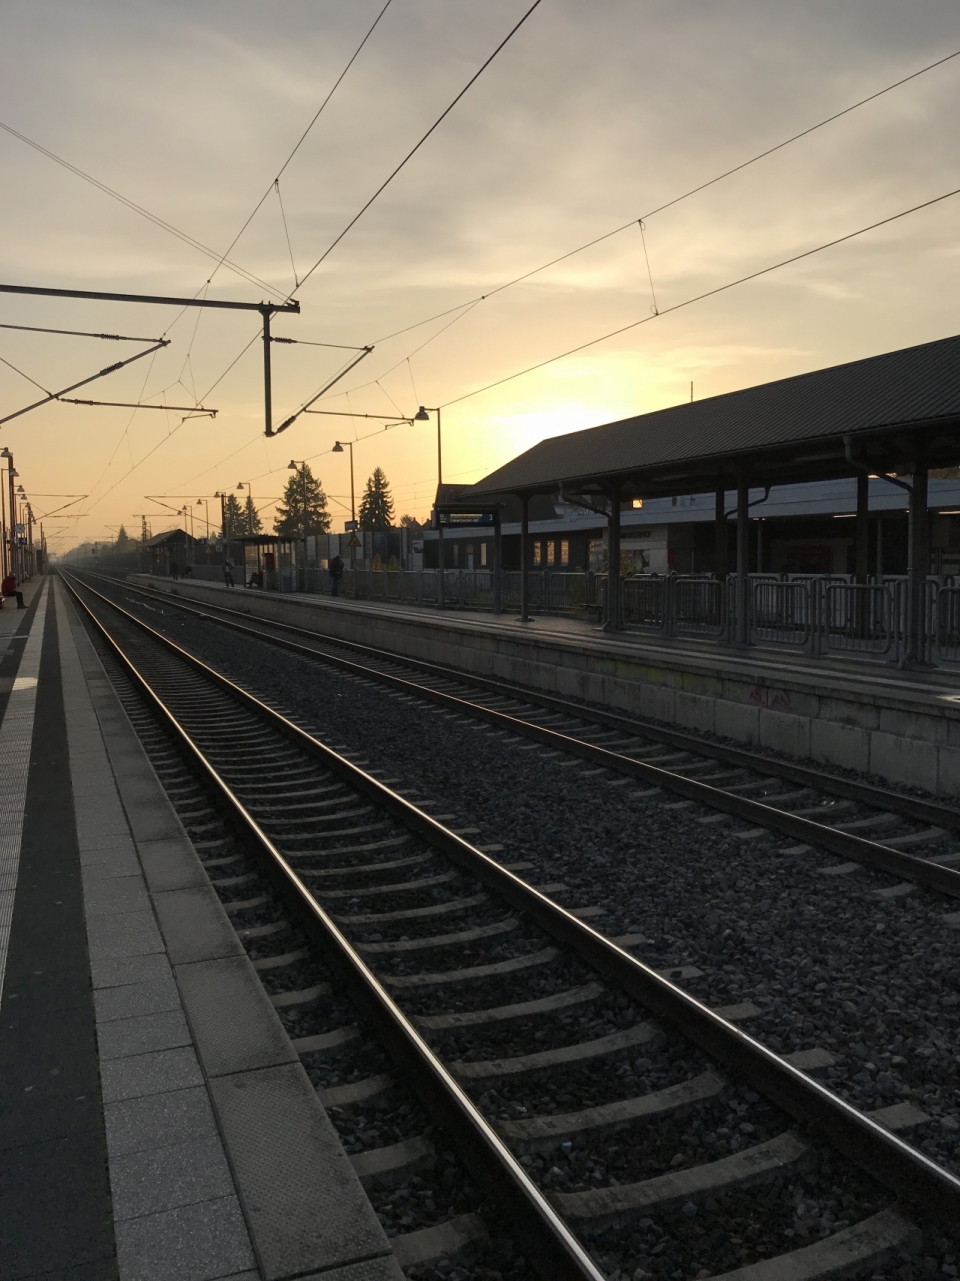 夕阳下的火车站建筑和火车铁轨